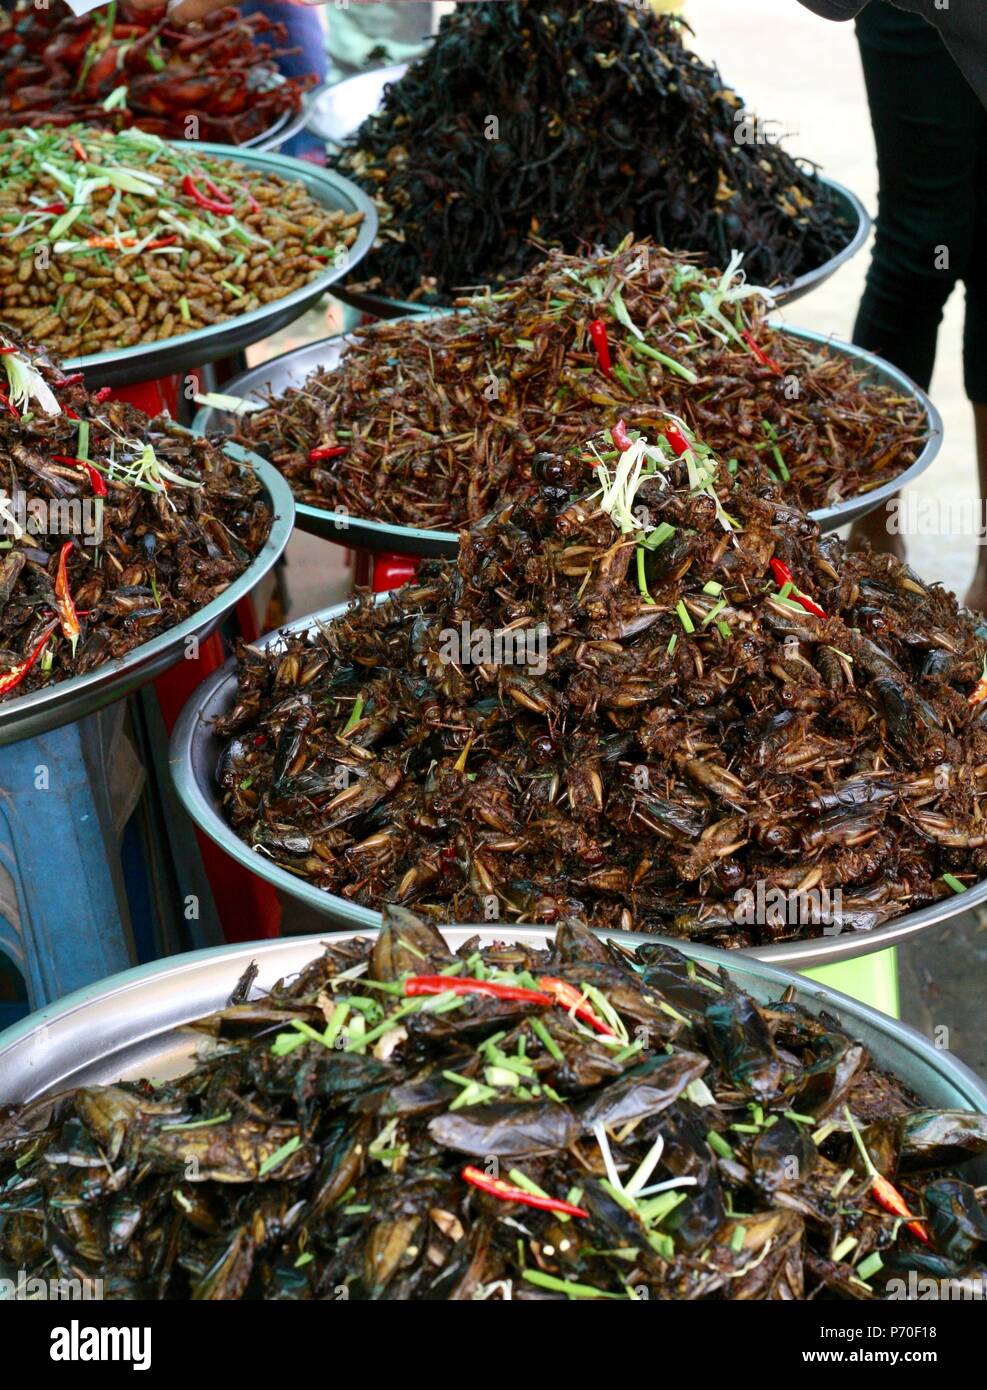 Spider Town, Kambodscha. Schaben, Grillen, Seidenraupen, Vogelspinnen und Grillen alle gebratenen bereit zu essen Stockfoto